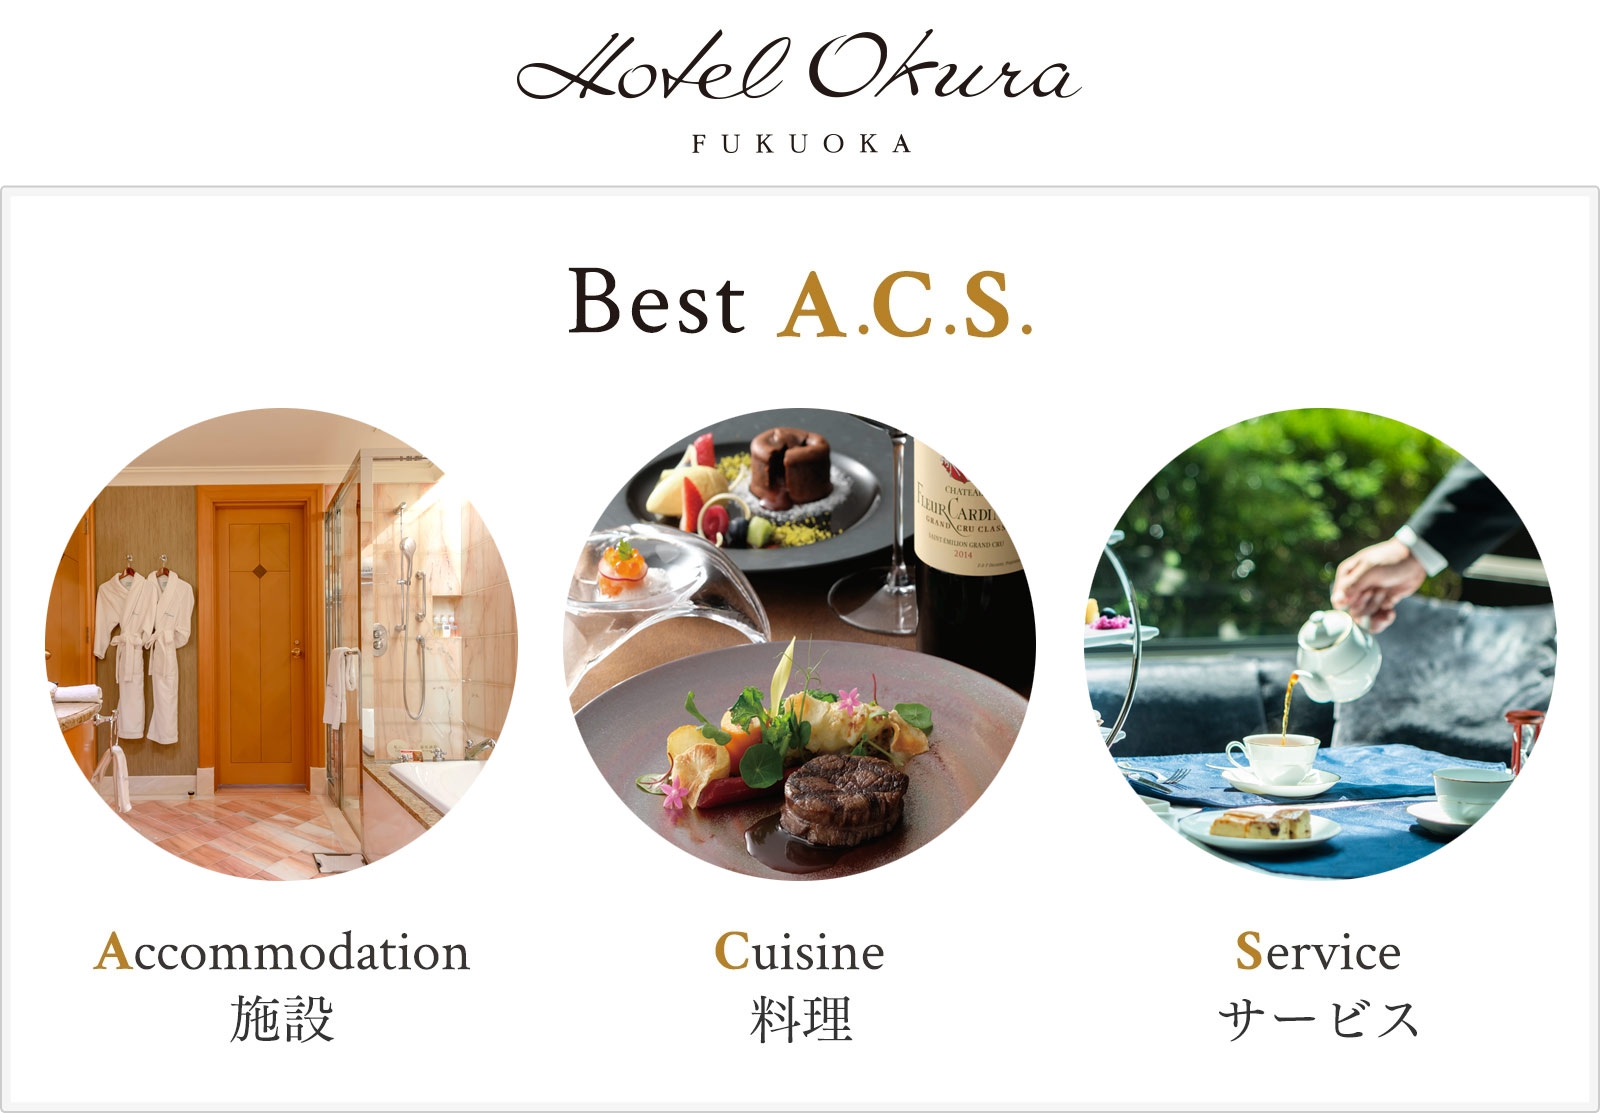 ホテルオークラ「Best A.C.S.」Accommodation施設　Cuisine料理　Serviceサービス